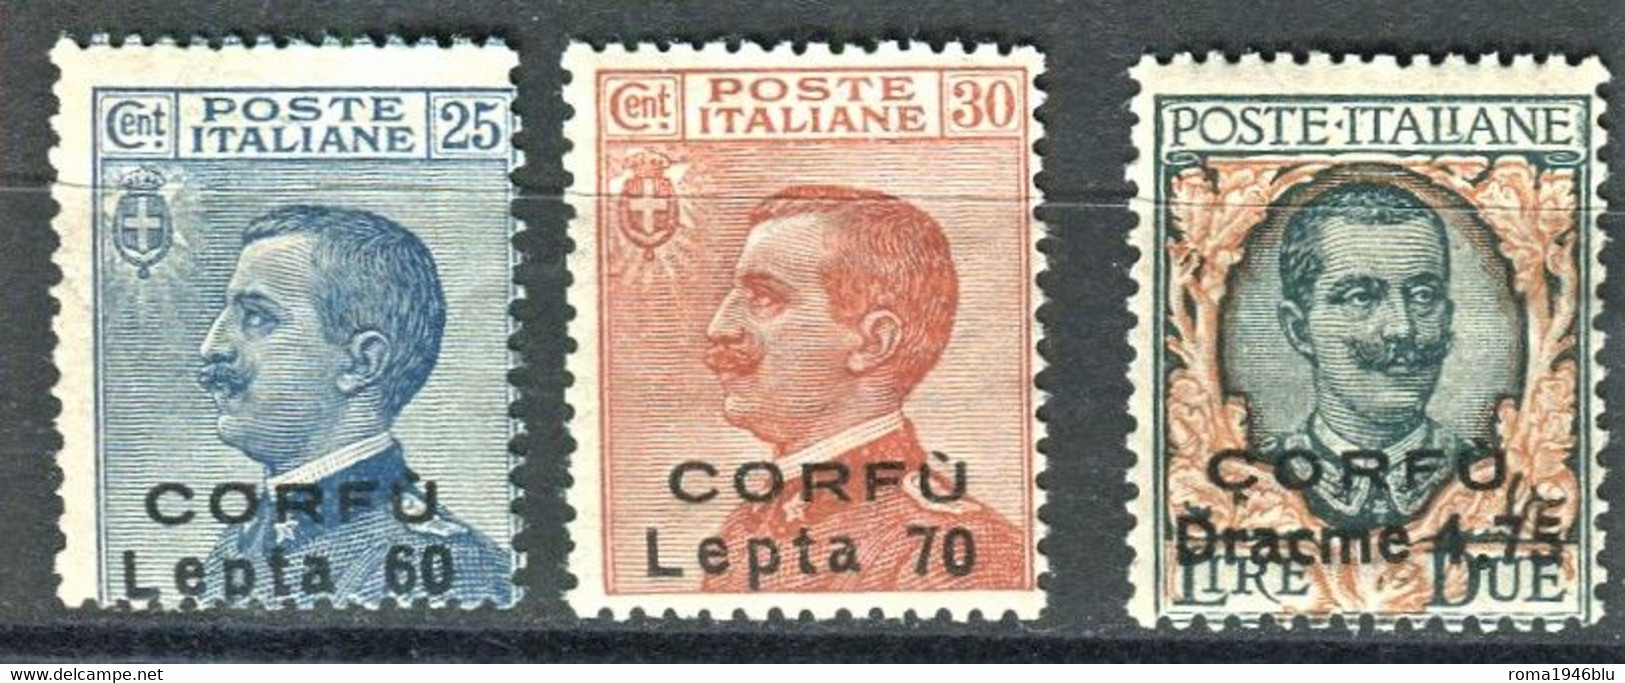 CORFU 1923 NON EMESSI 3 V. ** MNH - Corfu